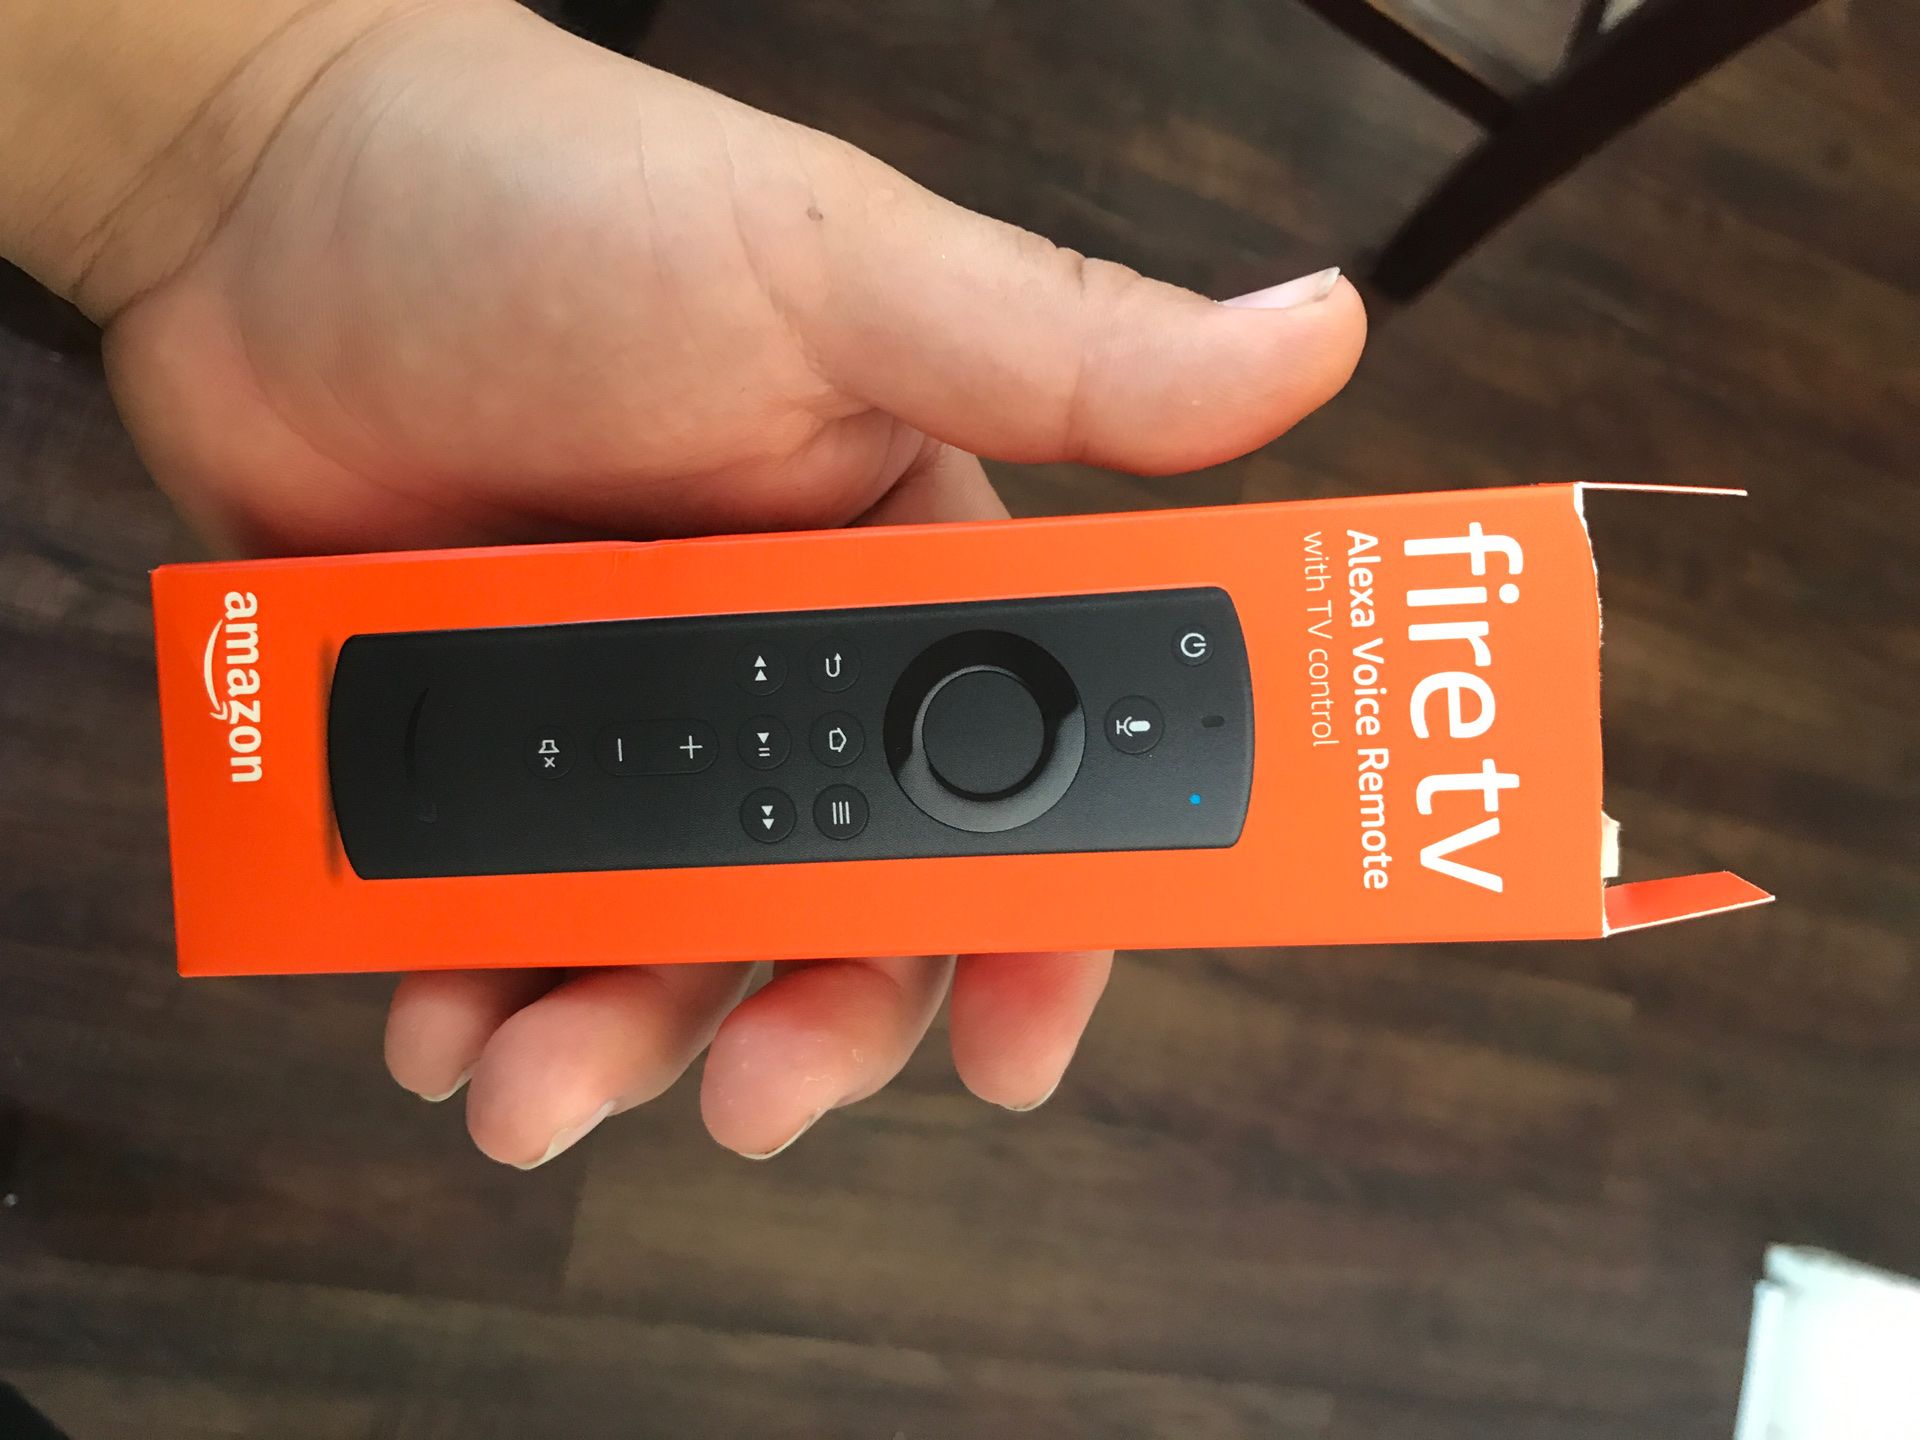 Fire TV Alexa voice remote